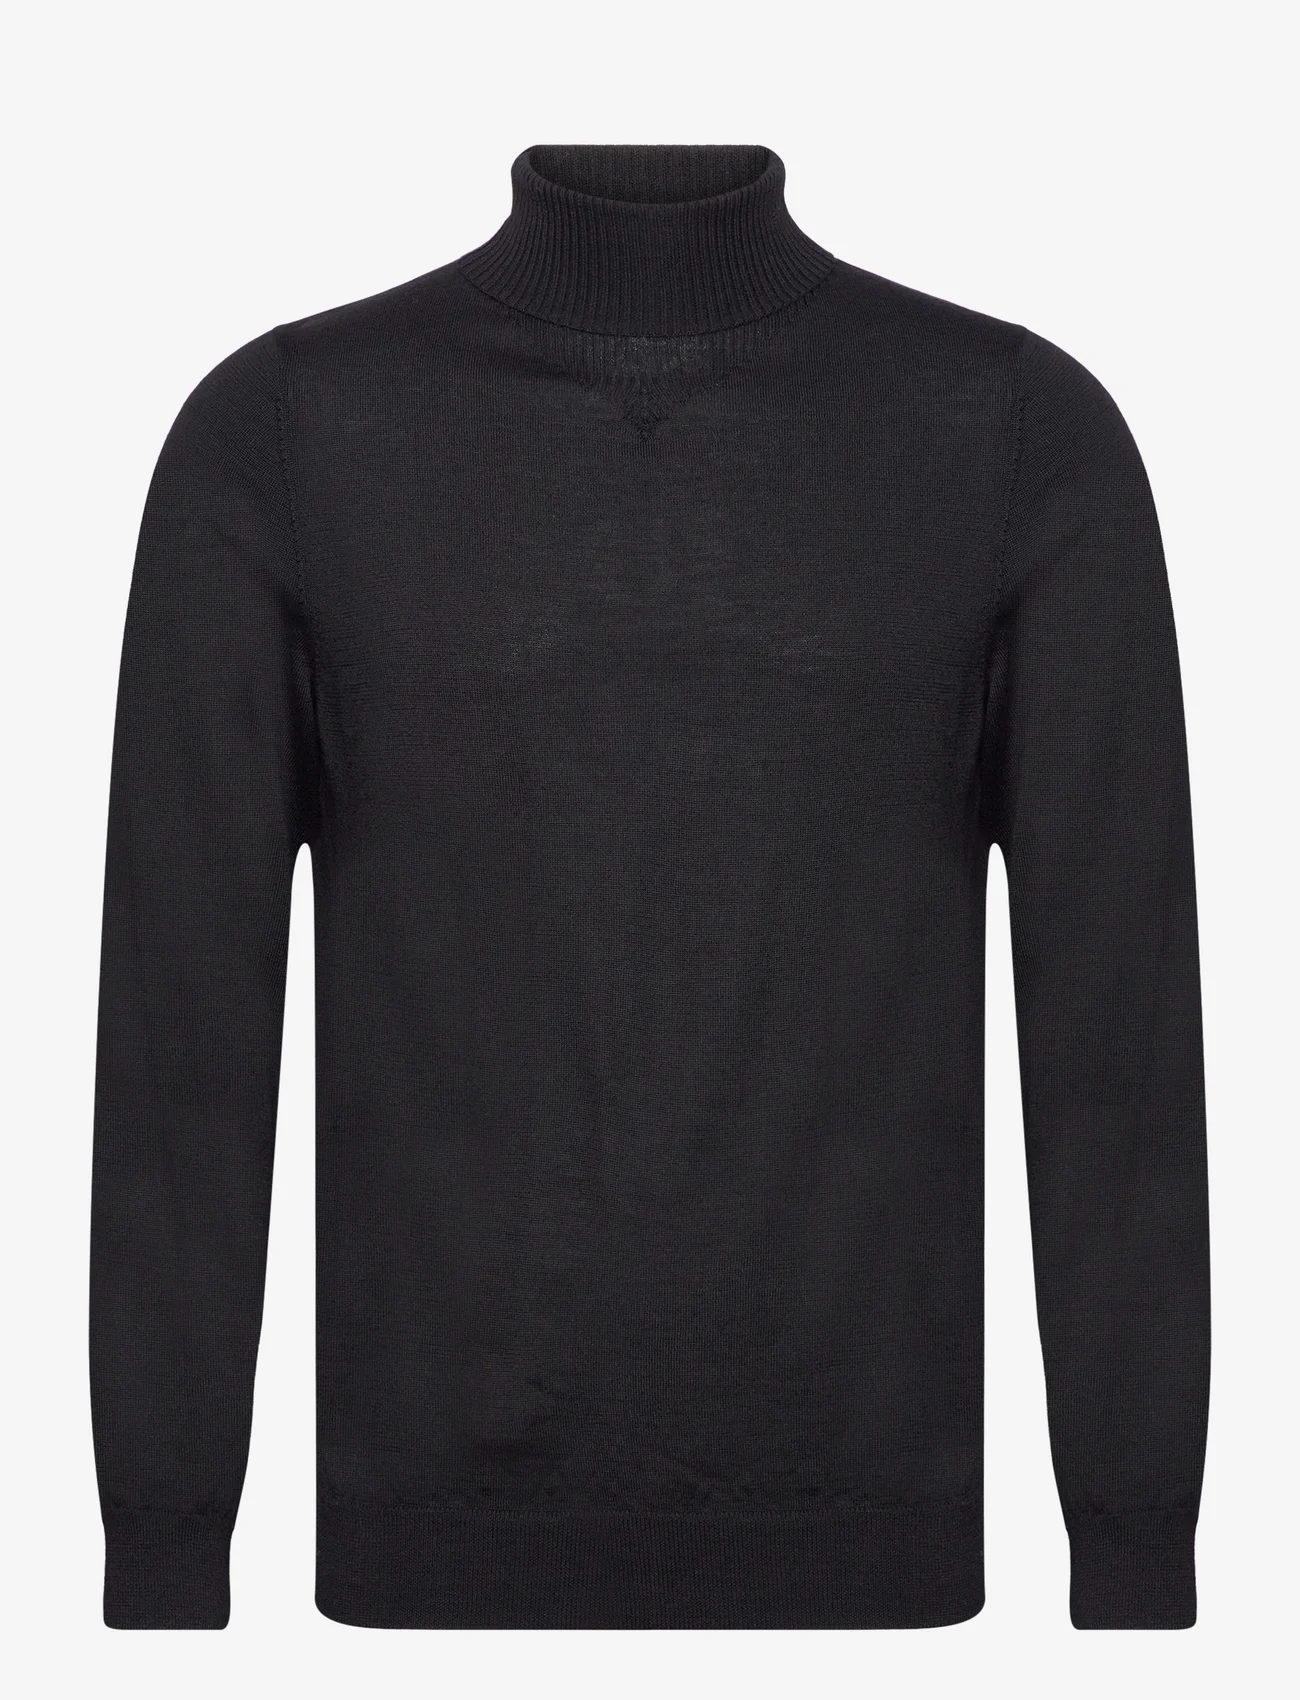 Filippa K - Merino Turtleneck Sweater - megztiniai su aukšta apykakle - black - 0